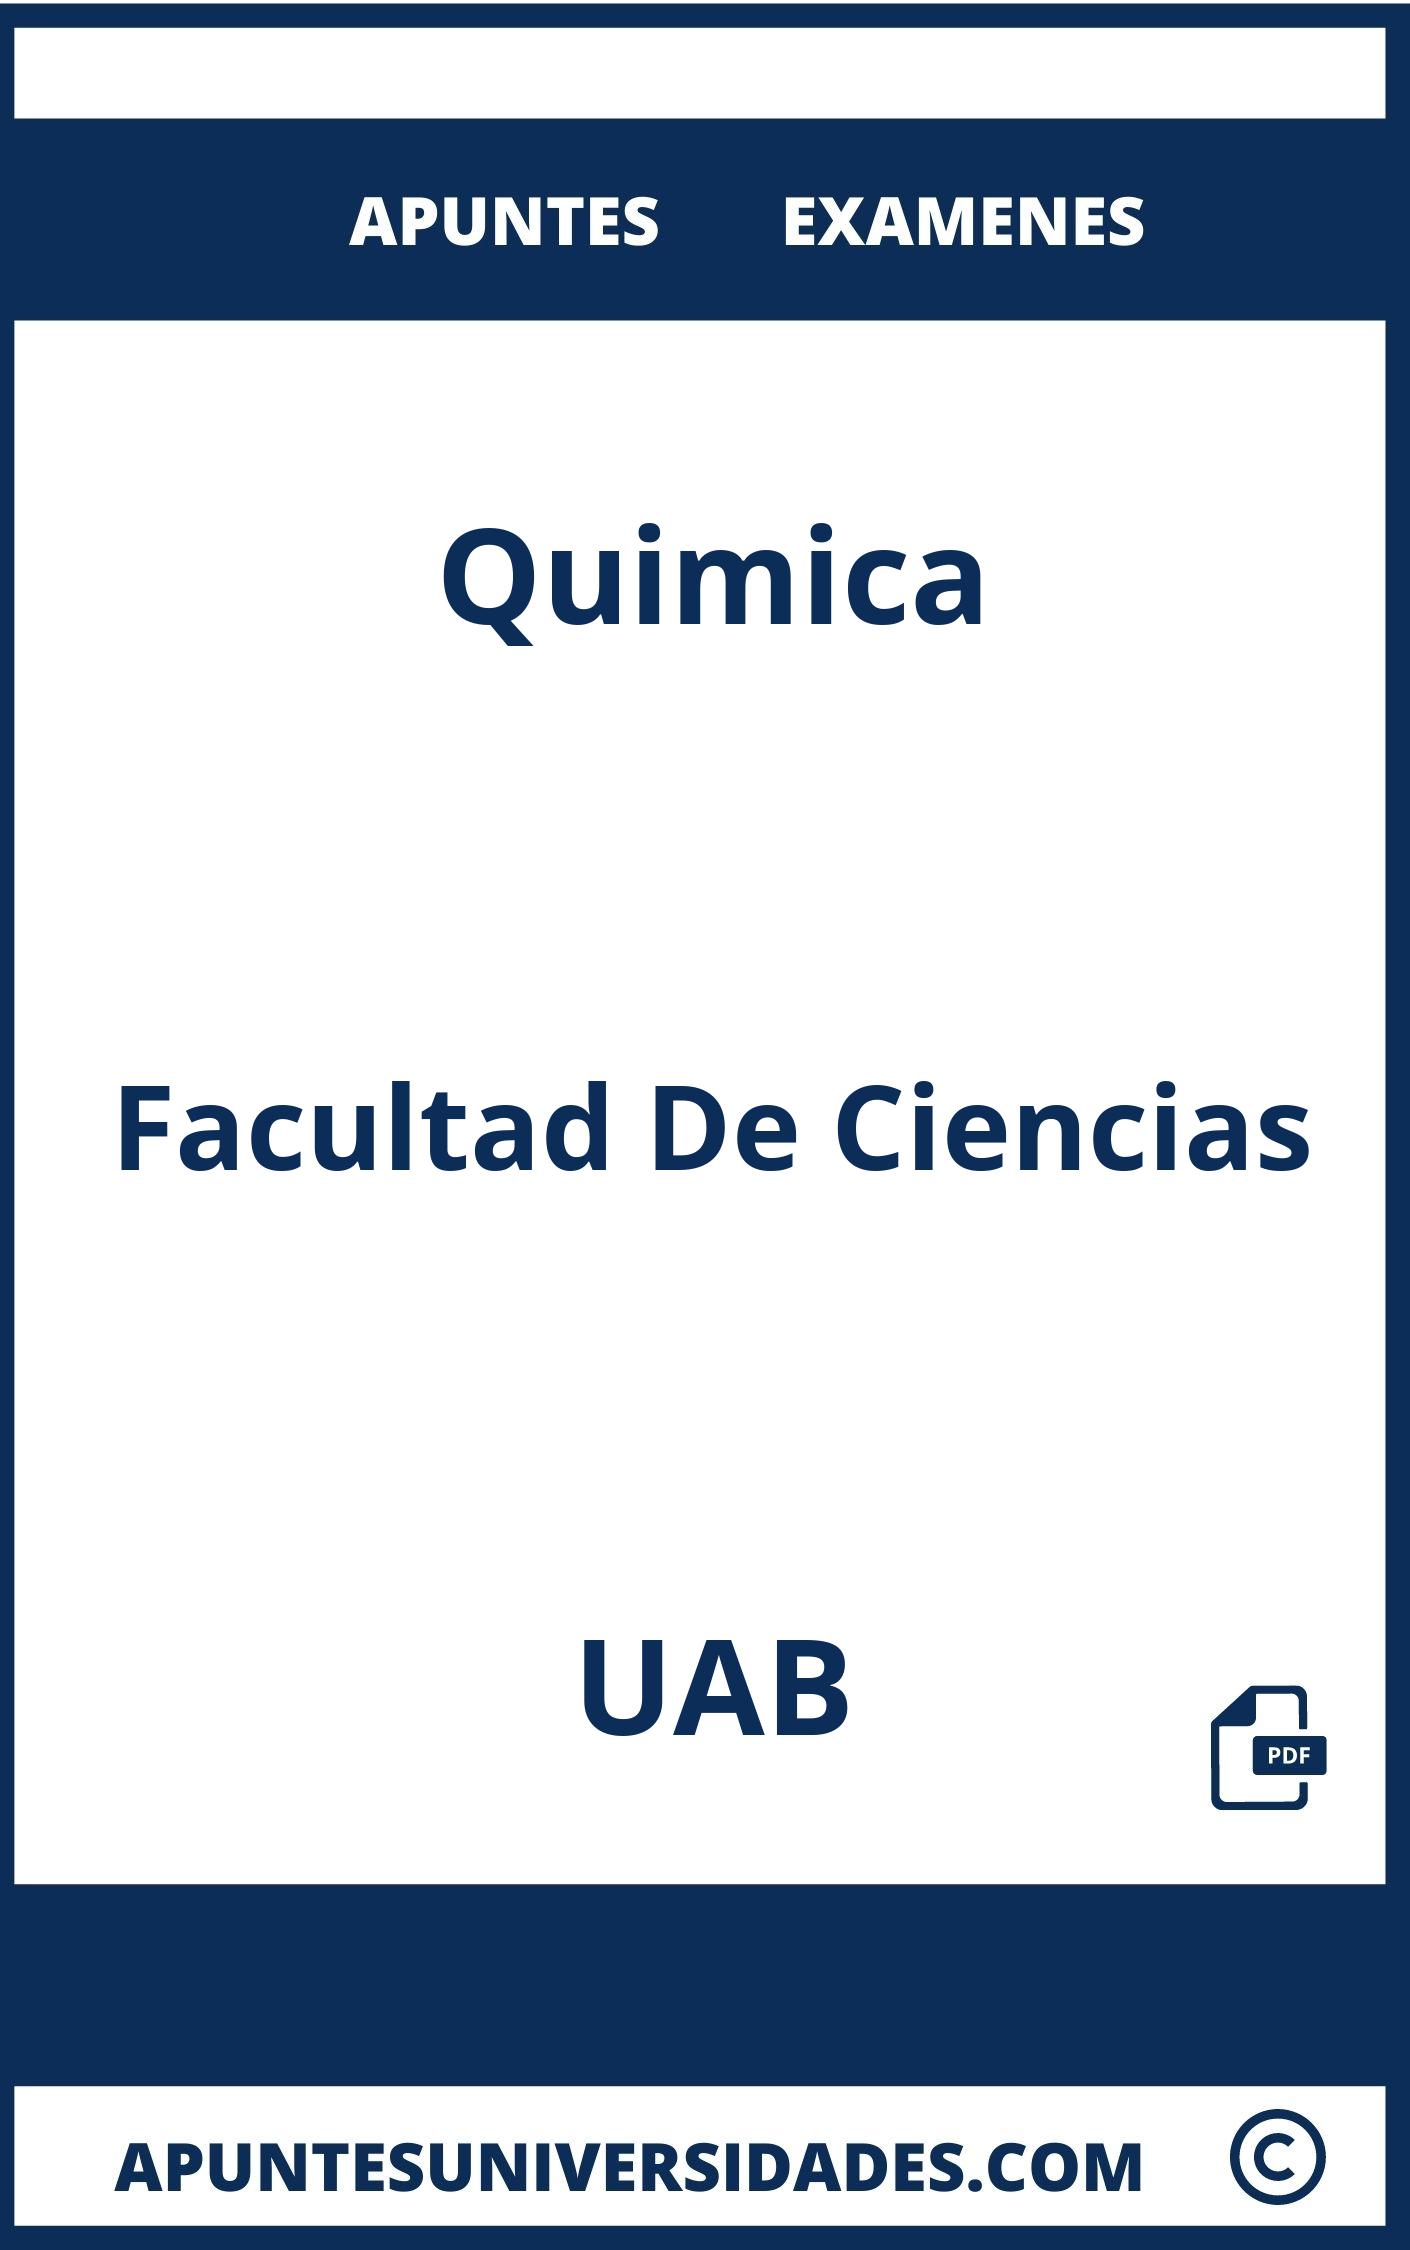 Apuntes y Examenes de Quimica UAB